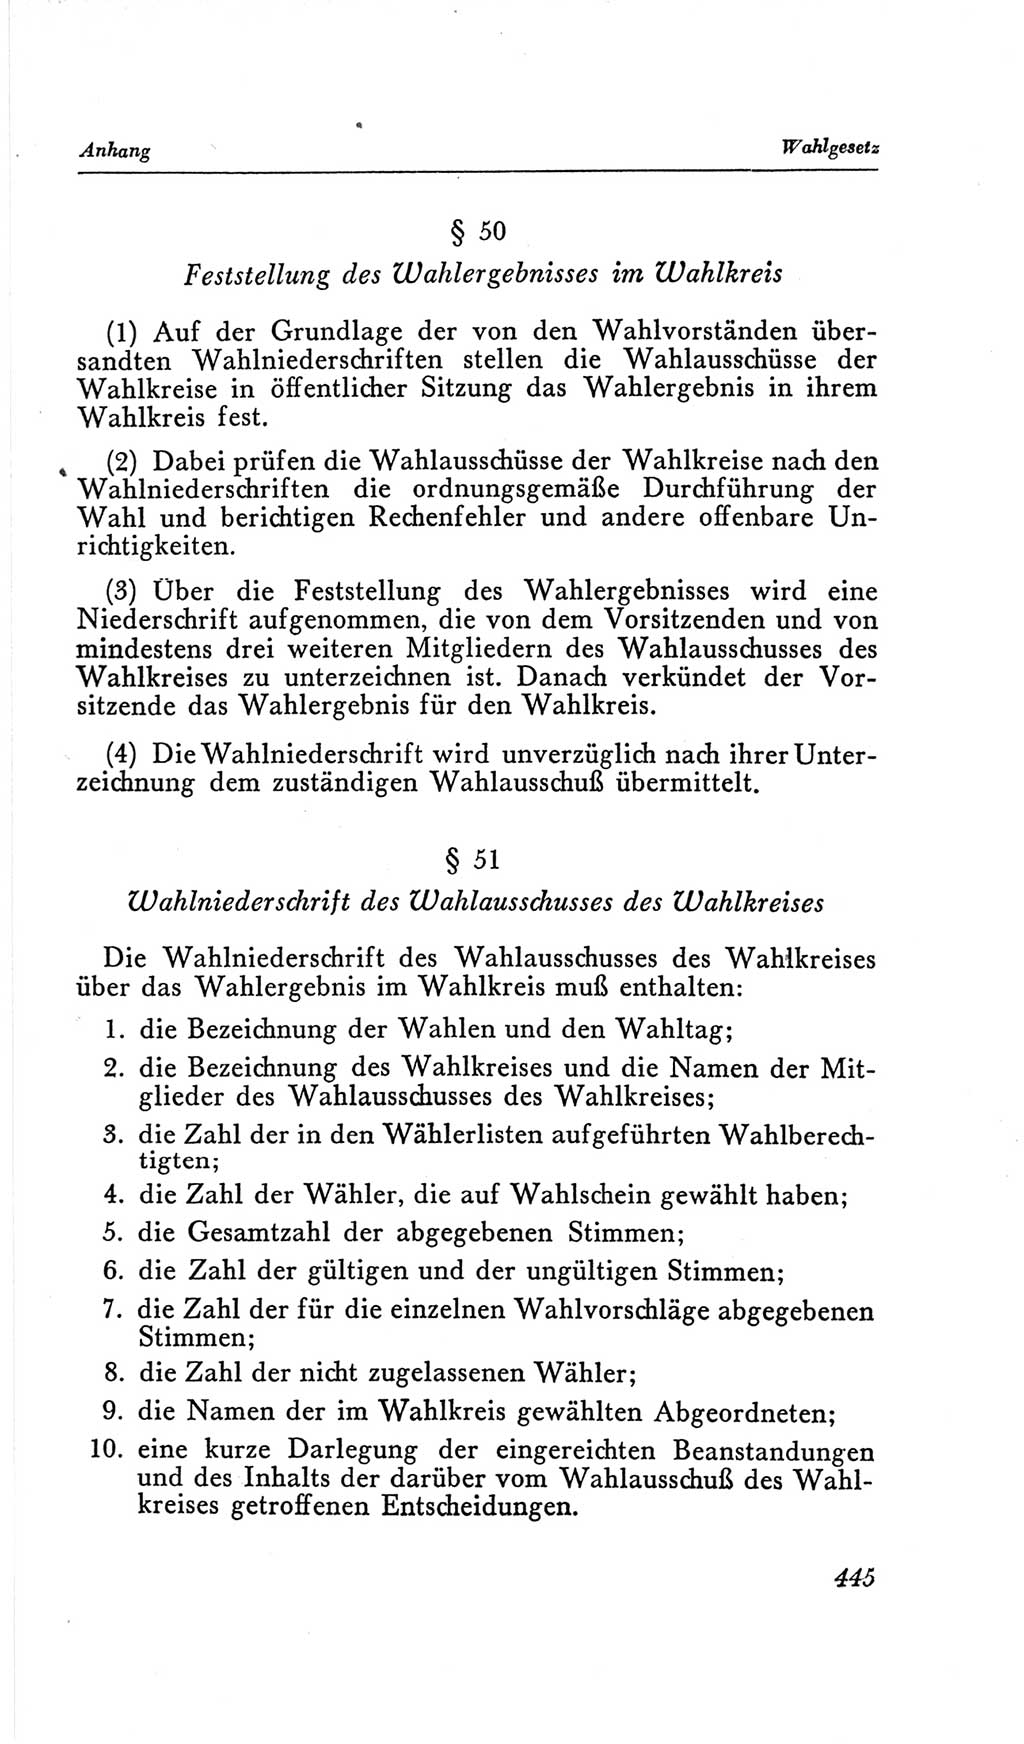 Handbuch der Volkskammer (VK) der Deutschen Demokratischen Republik (DDR), 2. Wahlperiode 1954-1958, Seite 445 (Hdb. VK. DDR, 2. WP. 1954-1958, S. 445)